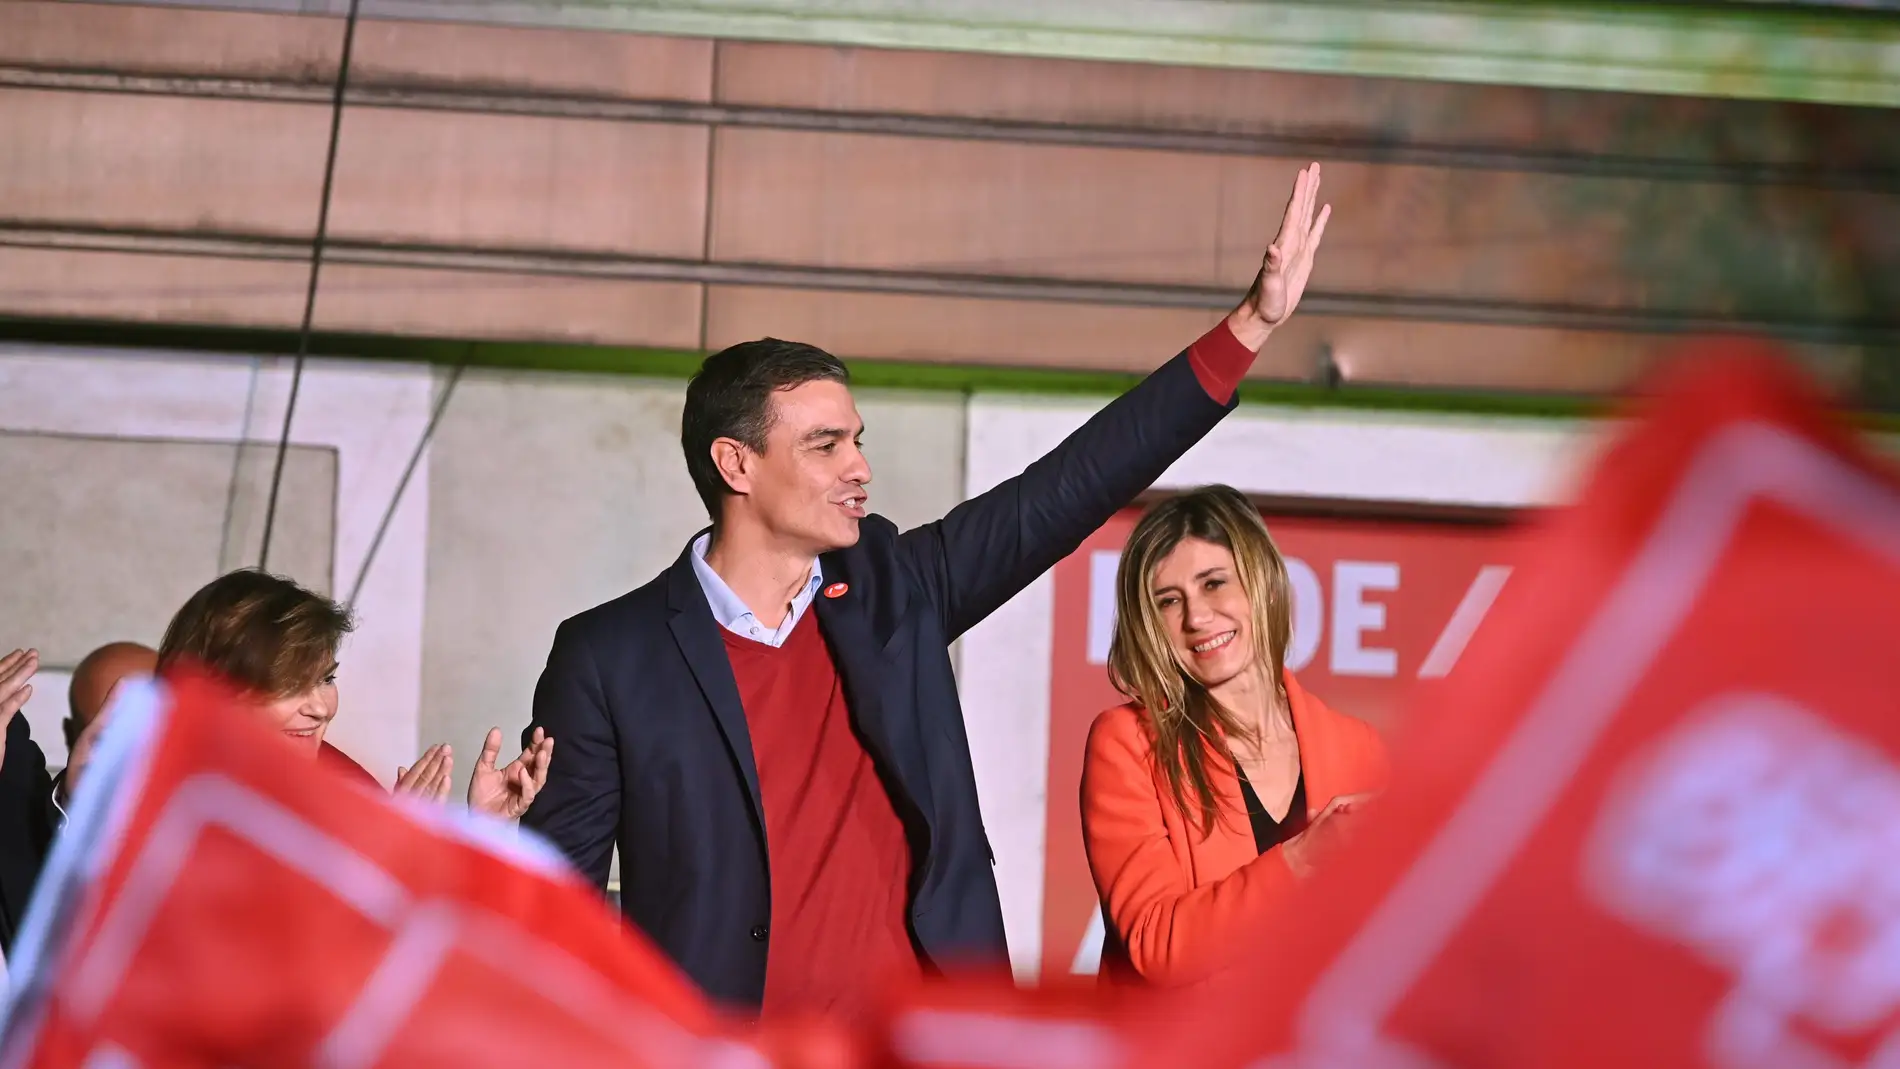 El líder del PSOE Pedro Sánchez